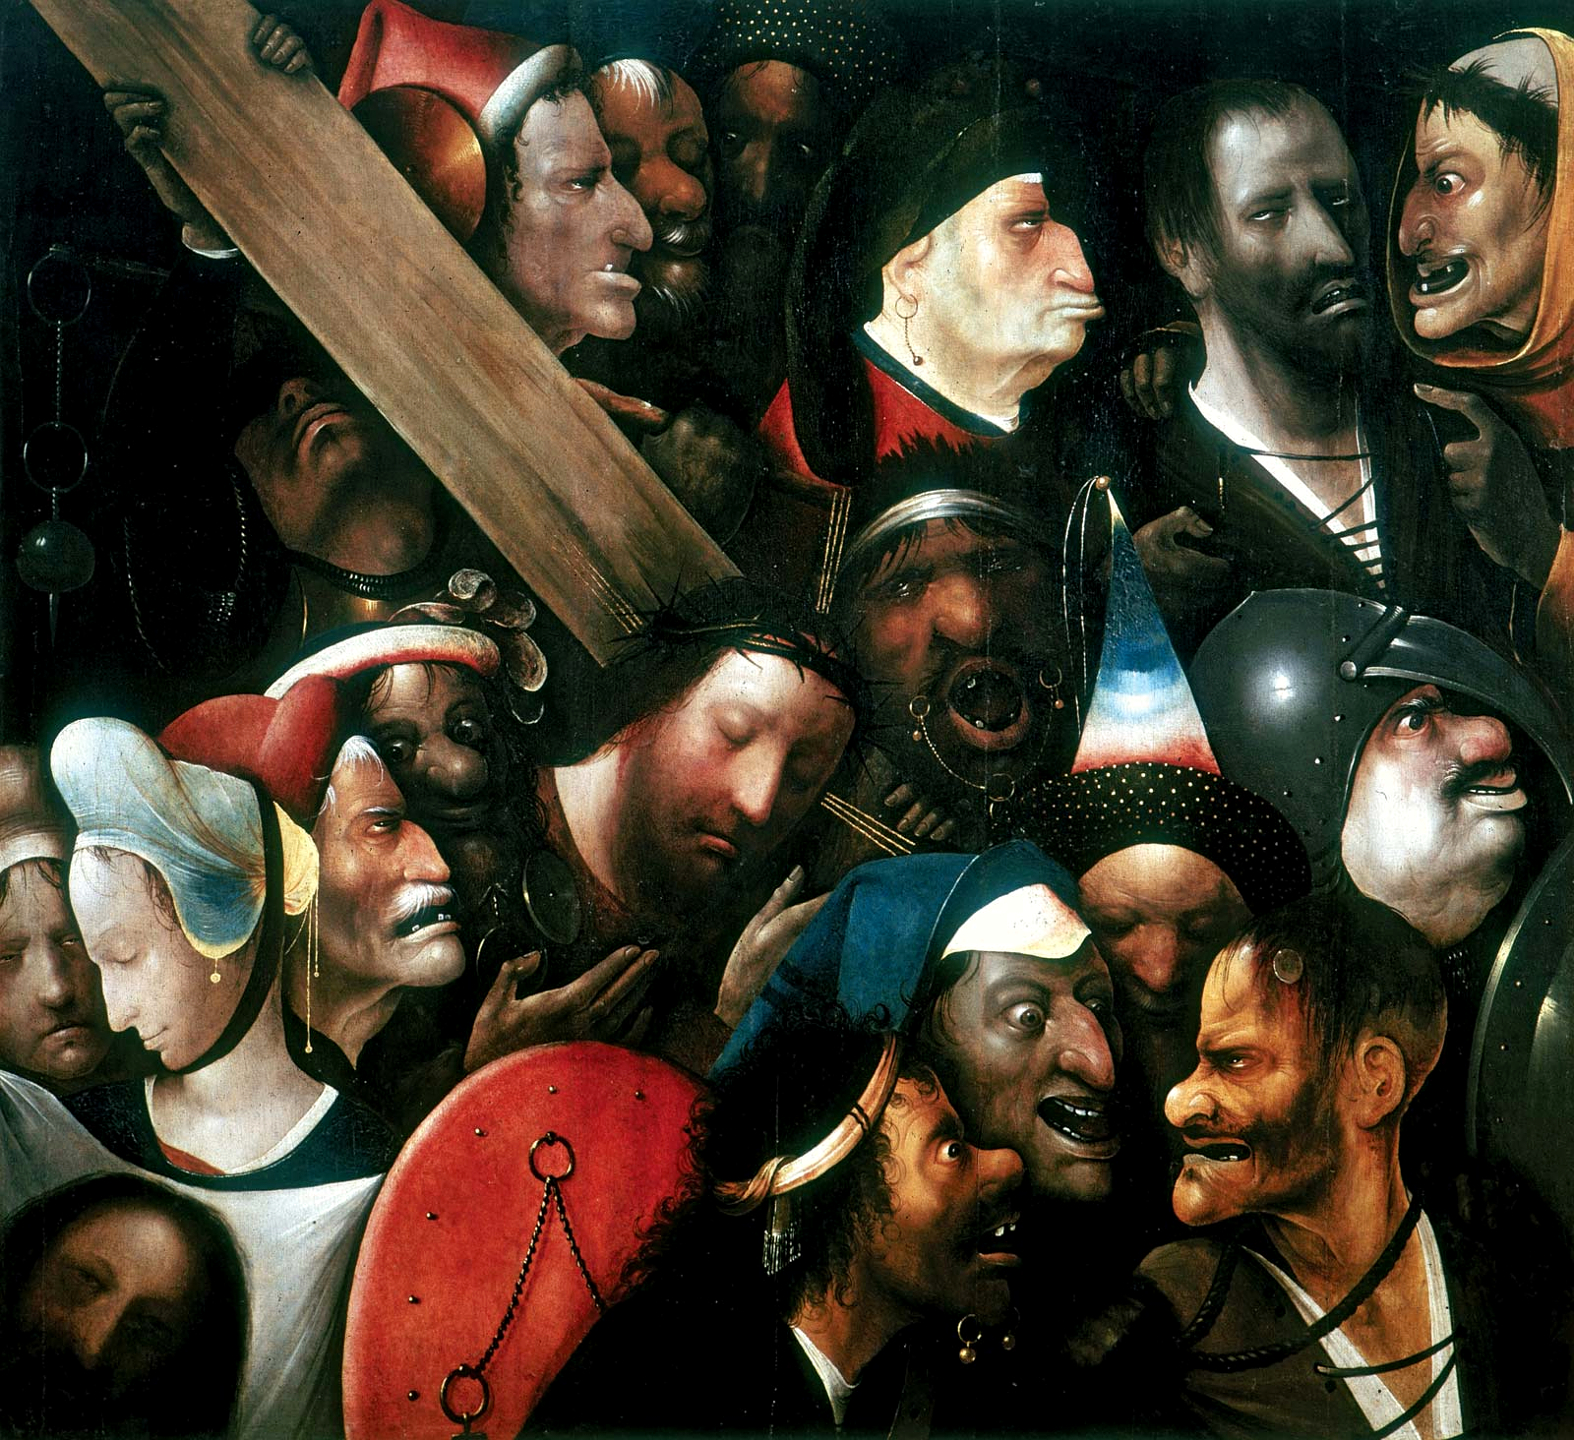 Христос, що несе хрест by Hieronymus Bosch's follower - 1510 